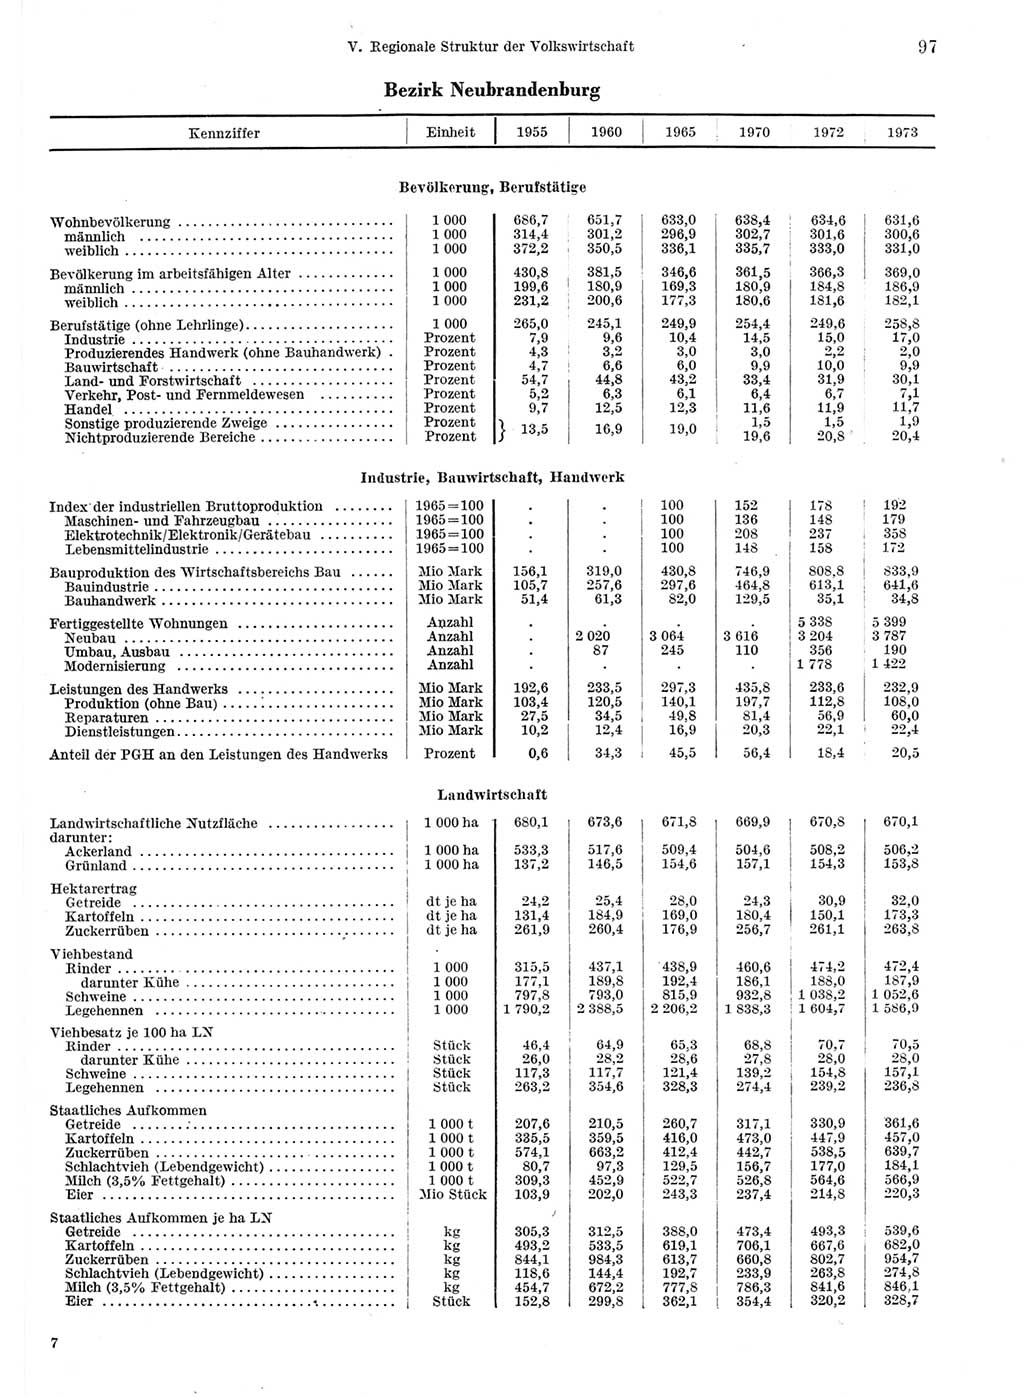 Statistisches Jahrbuch der Deutschen Demokratischen Republik (DDR) 1974, Seite 97 (Stat. Jb. DDR 1974, S. 97)